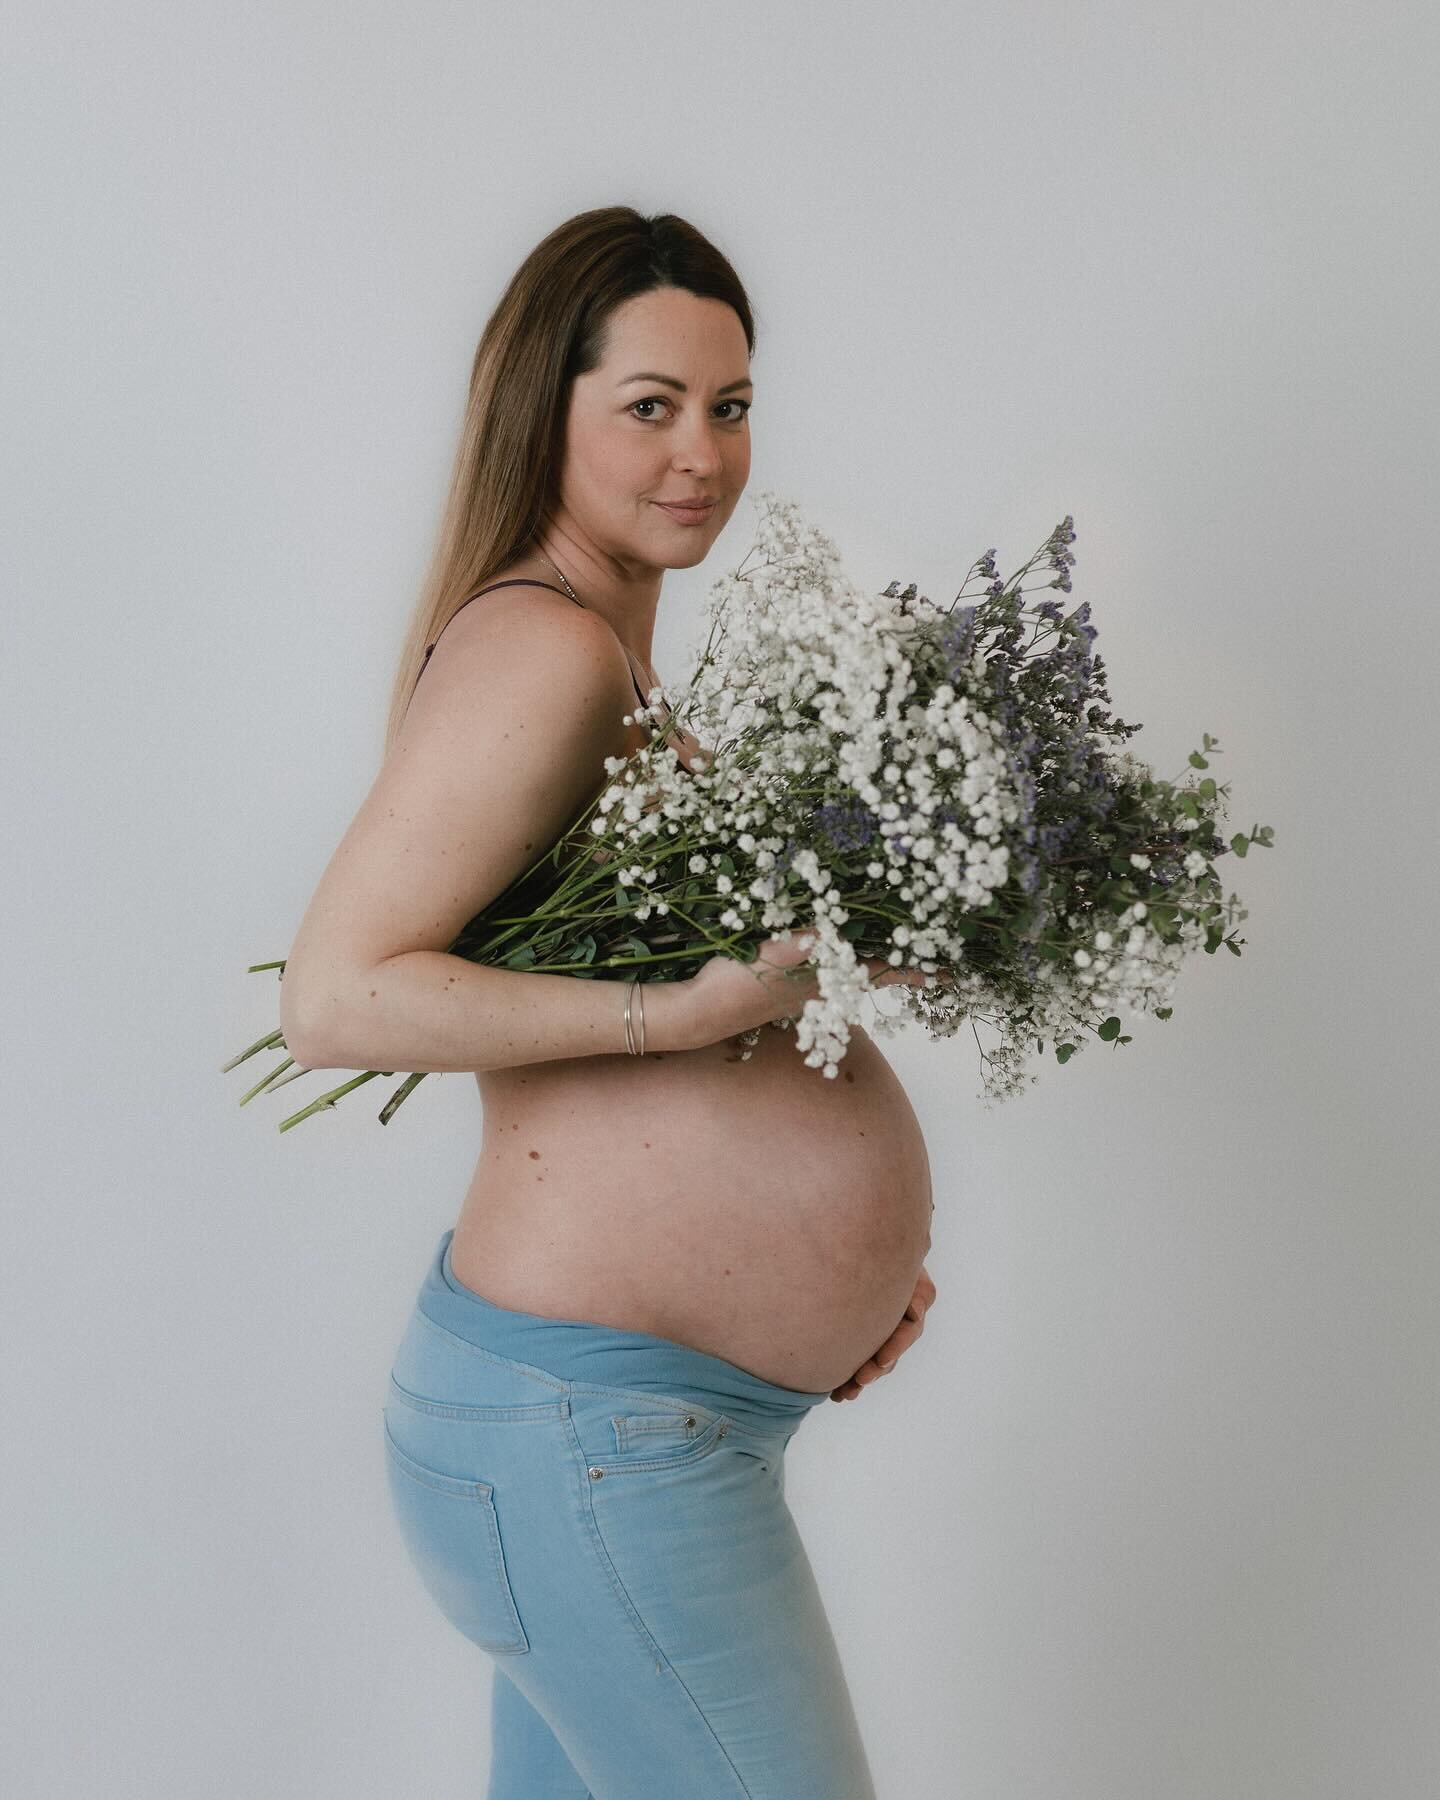 Nika, v devetem mesecu 🤍 🤍

*k sreči nisem rabila asistirat pri porodu, fotkanje je potekalo brez zapletov!

#nosečka #fotografiranjenosečnic #nosečni&scaron;kofotografiranje #pregnancyphotos #slovenskifotografi